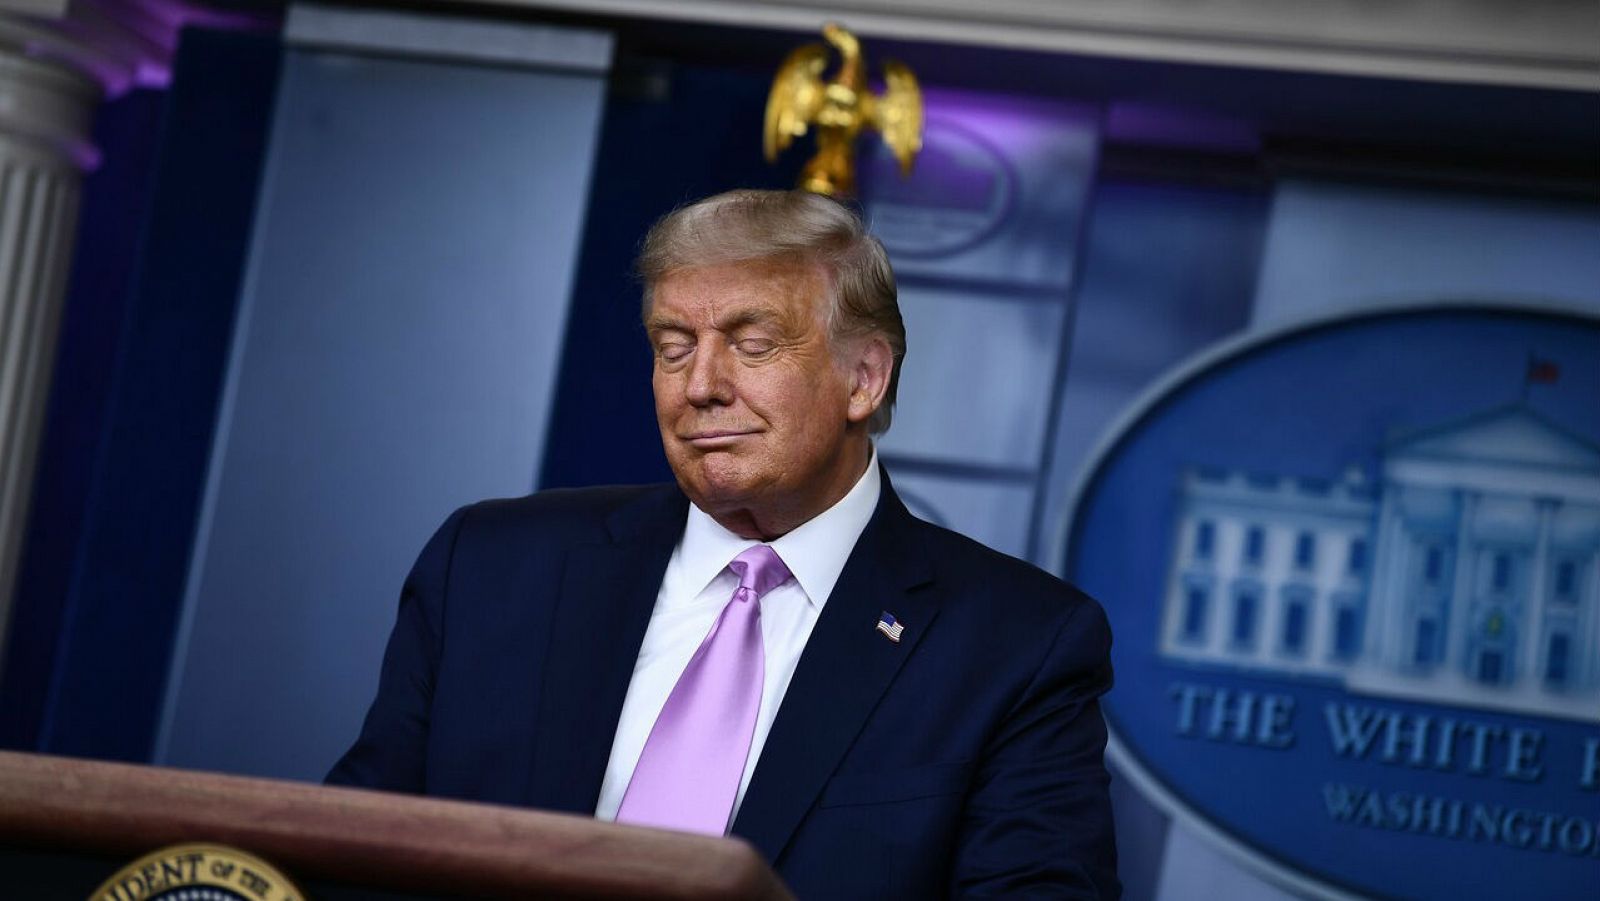 El presidente de Estados Unidos, Donald Trump, durante una conferencia de prensa en la Casa Blanca, en Washington, DC.